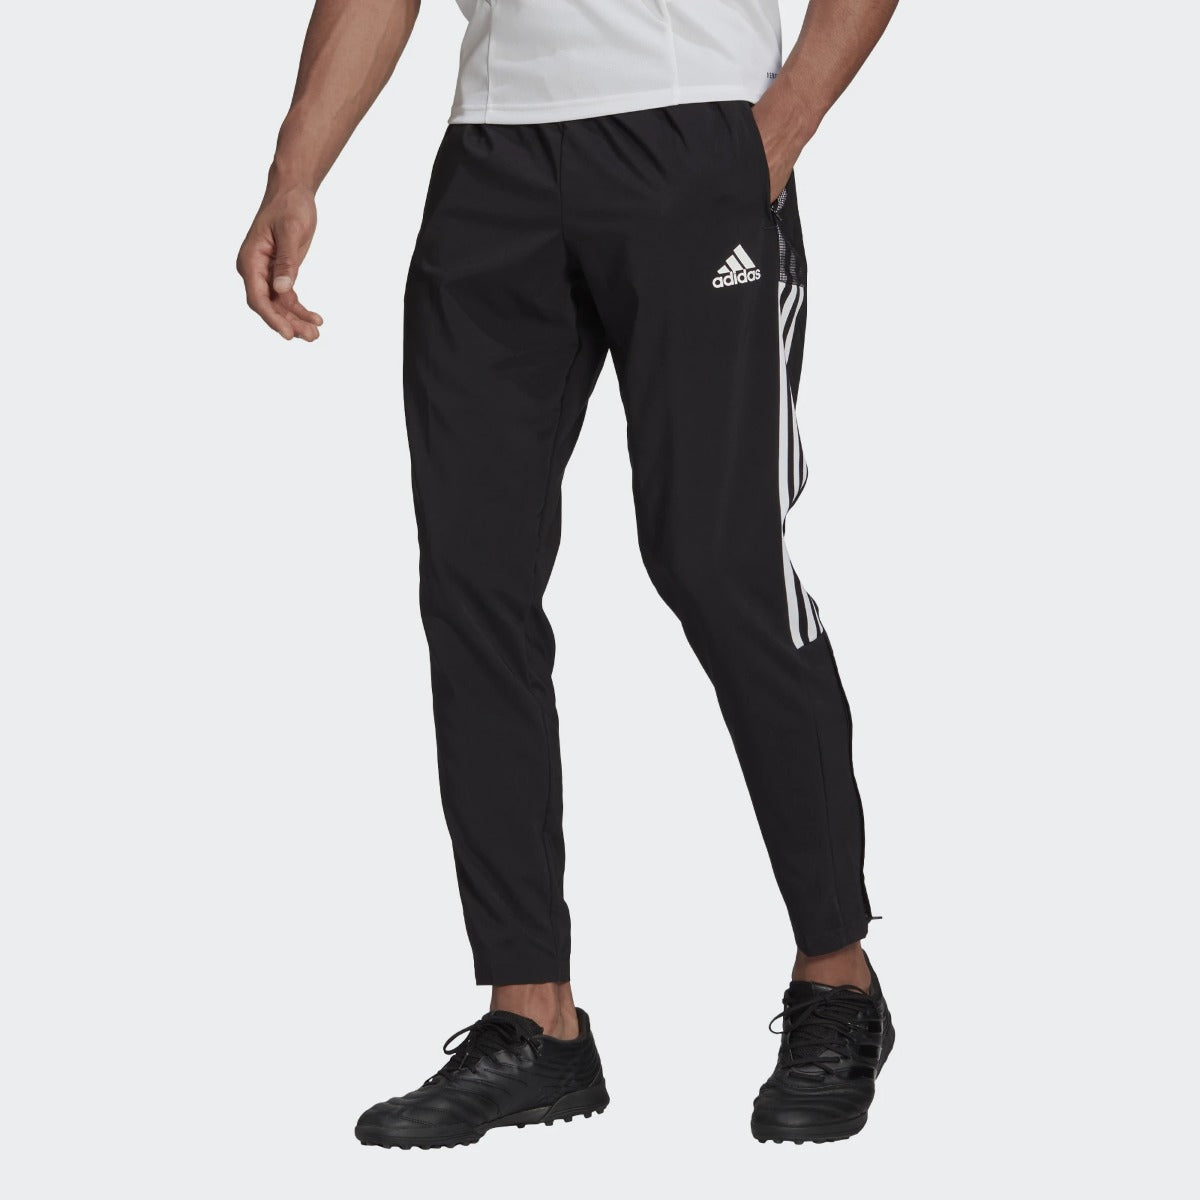 Pantalones de chándal Adidas Tiro - Negro/Blanco